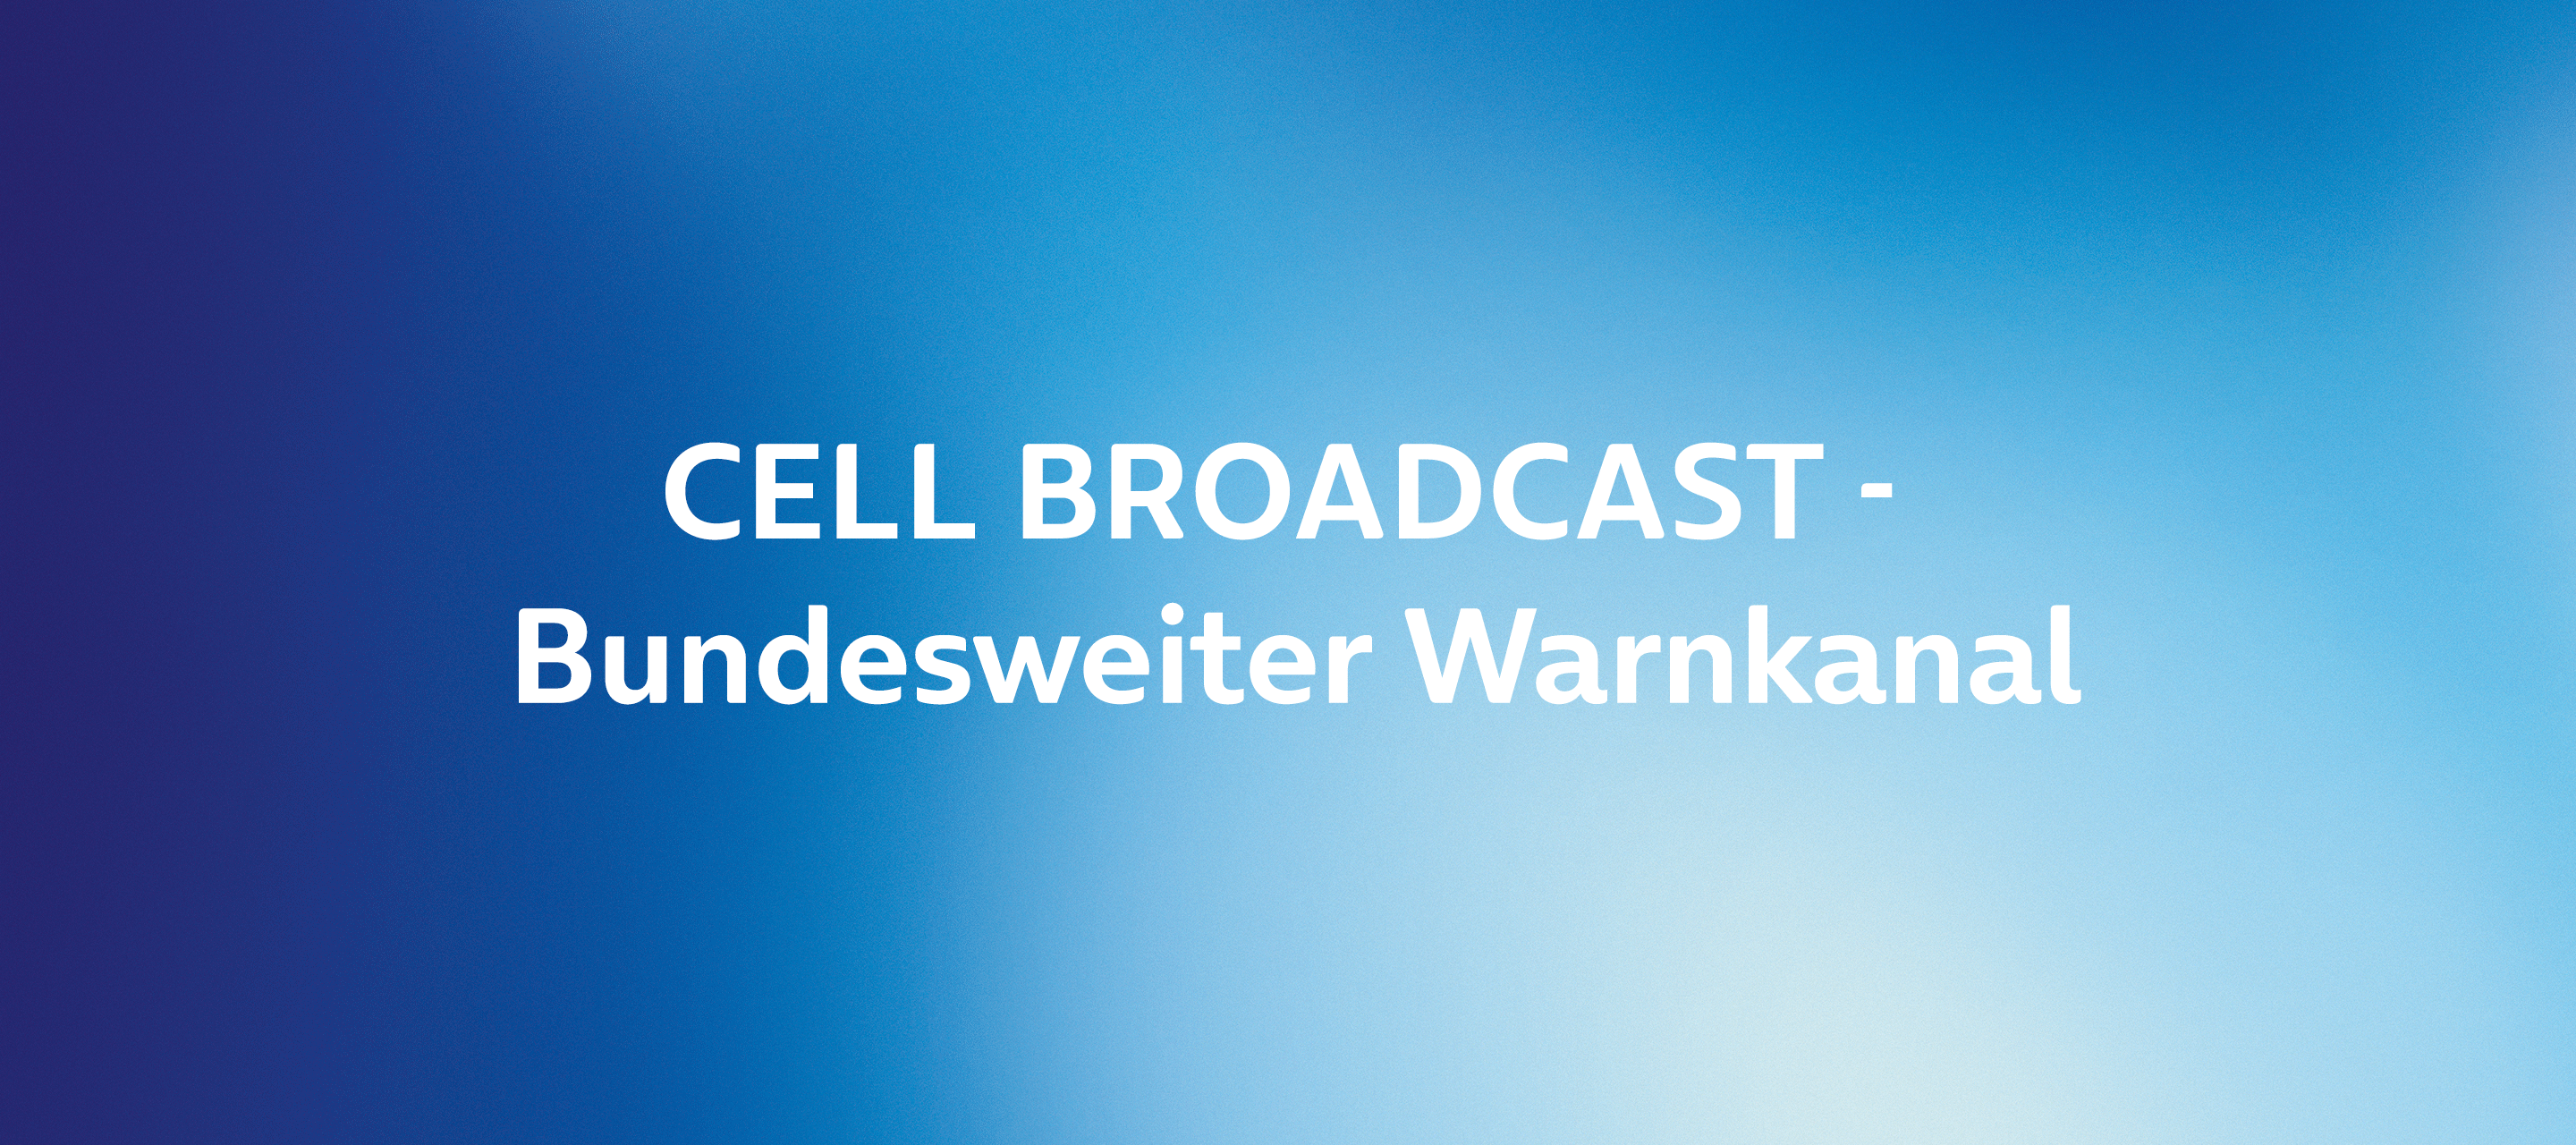 Bundesweiter Warntag am 08. Dezember mit Cell Broadcast